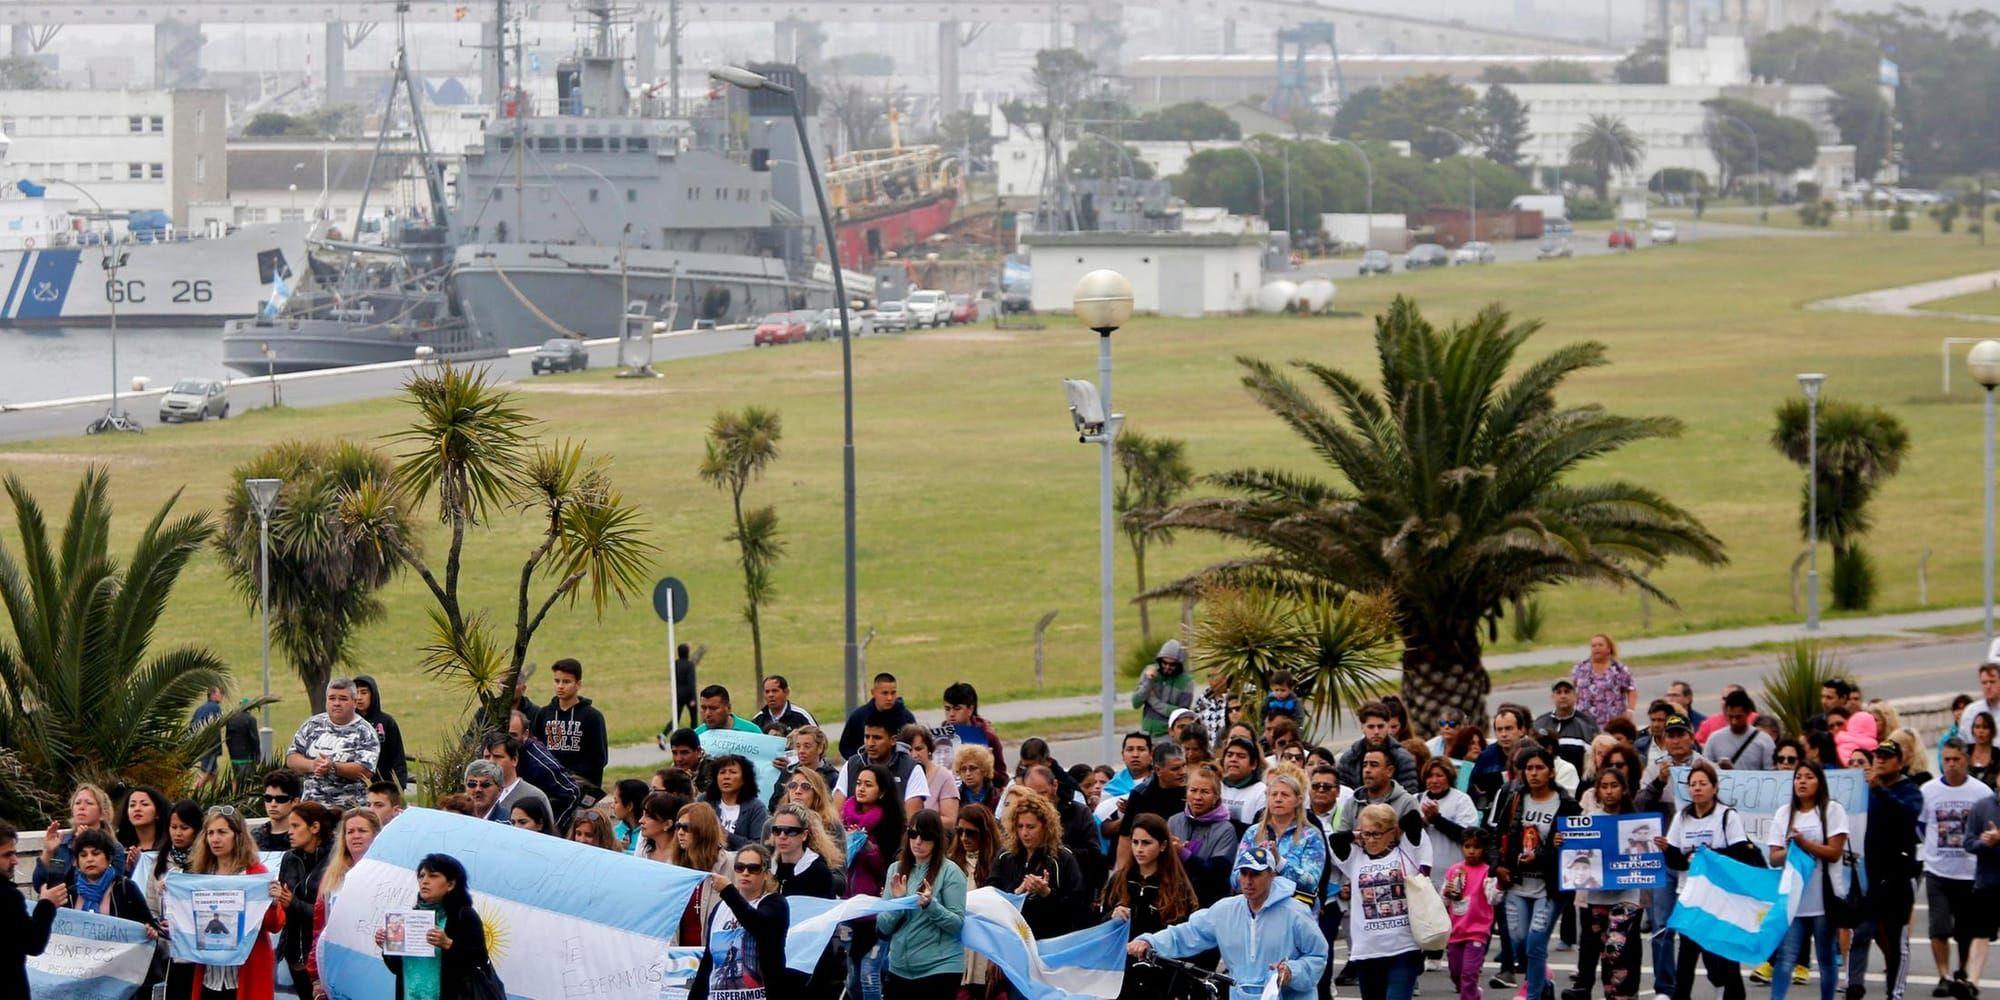 Anhöriga till besättningen marscherar utanför en flottbas i Mar del Plata den 3 december. De anhöriga har varit oeniga med militären om hur sökandet ska utföras. BILD: Vicente Robles, AP, TT